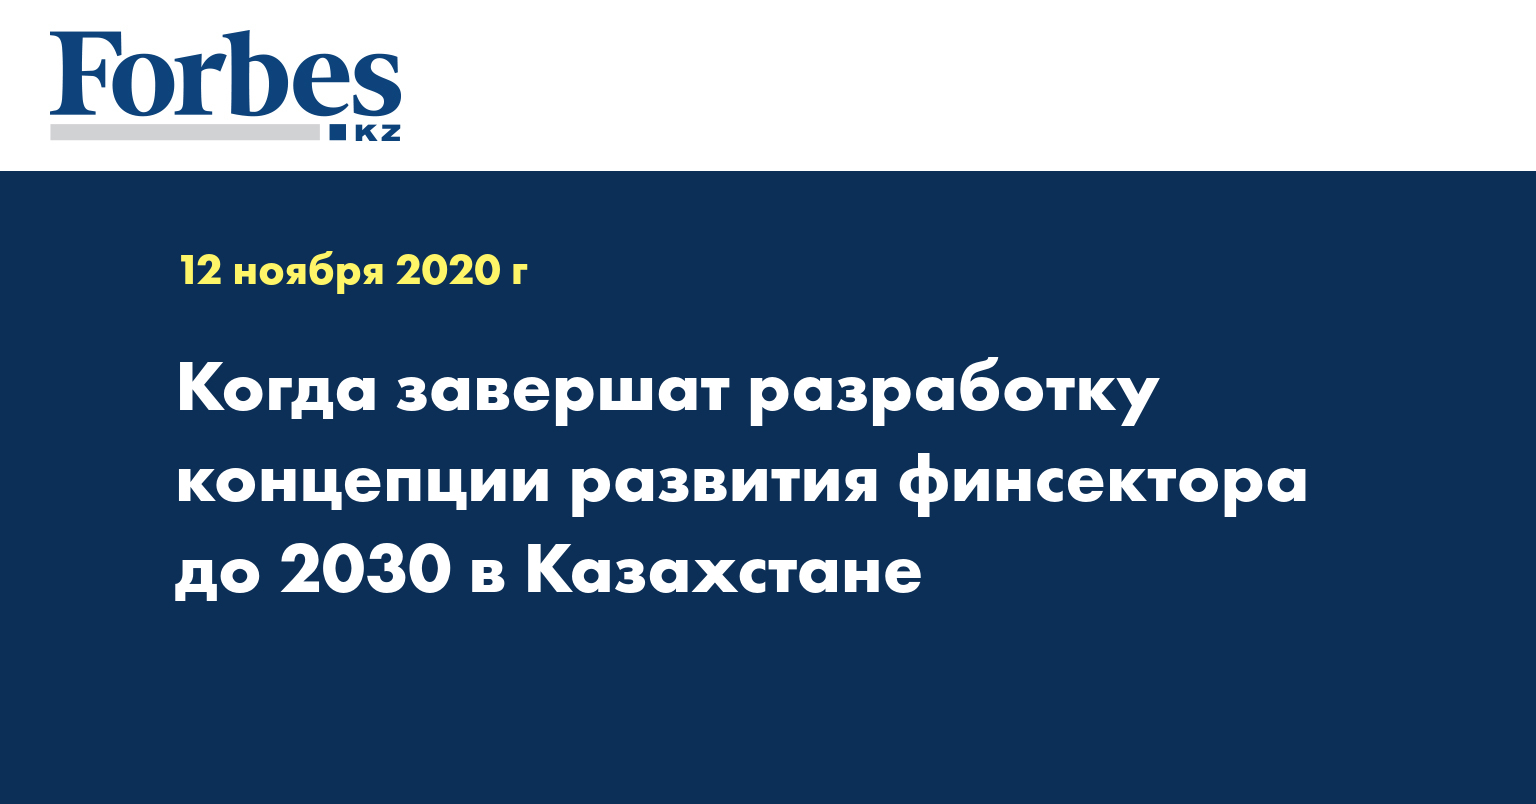 Когда завершат разработку концепции развития финсектора до 2030 в Казахстане